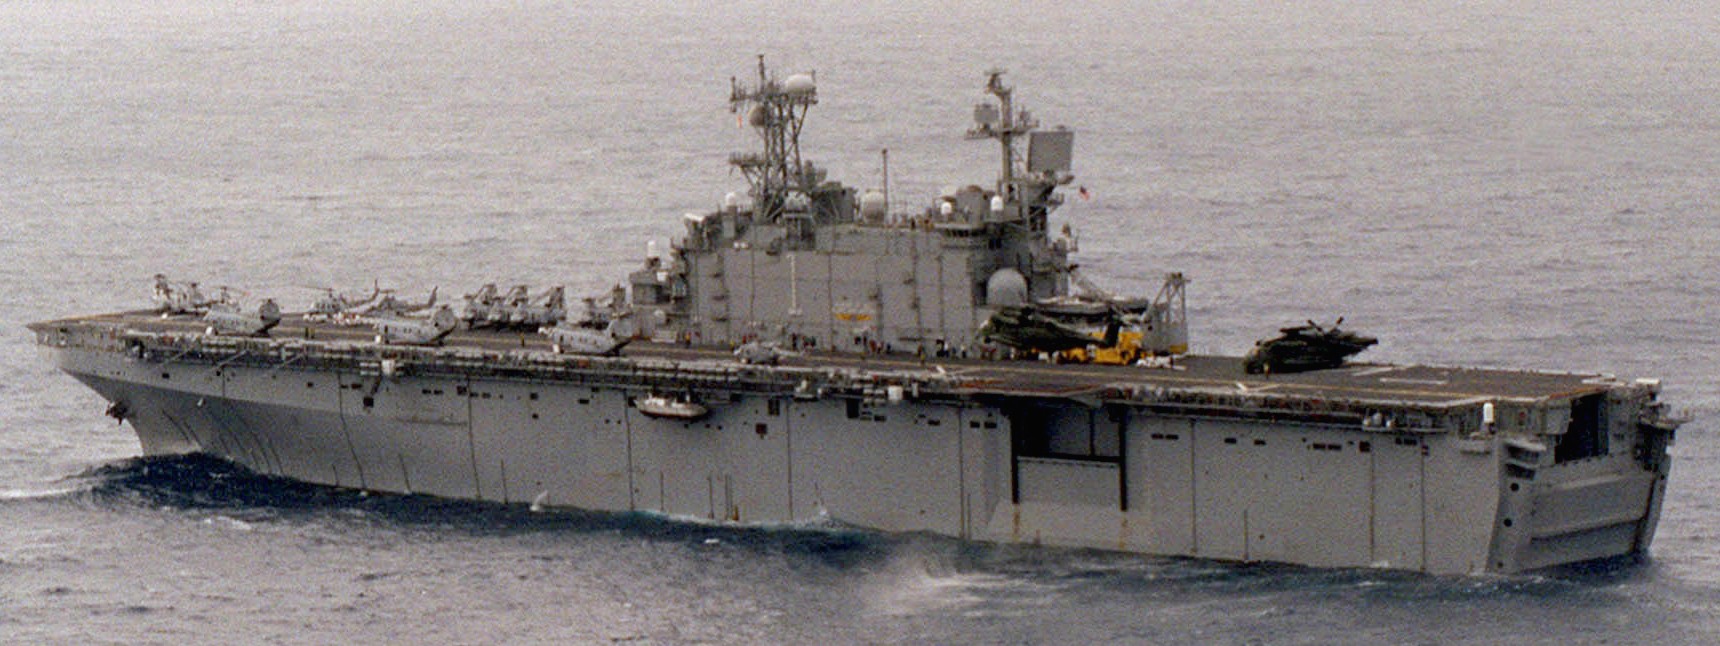 lha-1 uss tarawa amphibious assault ship us navy 90